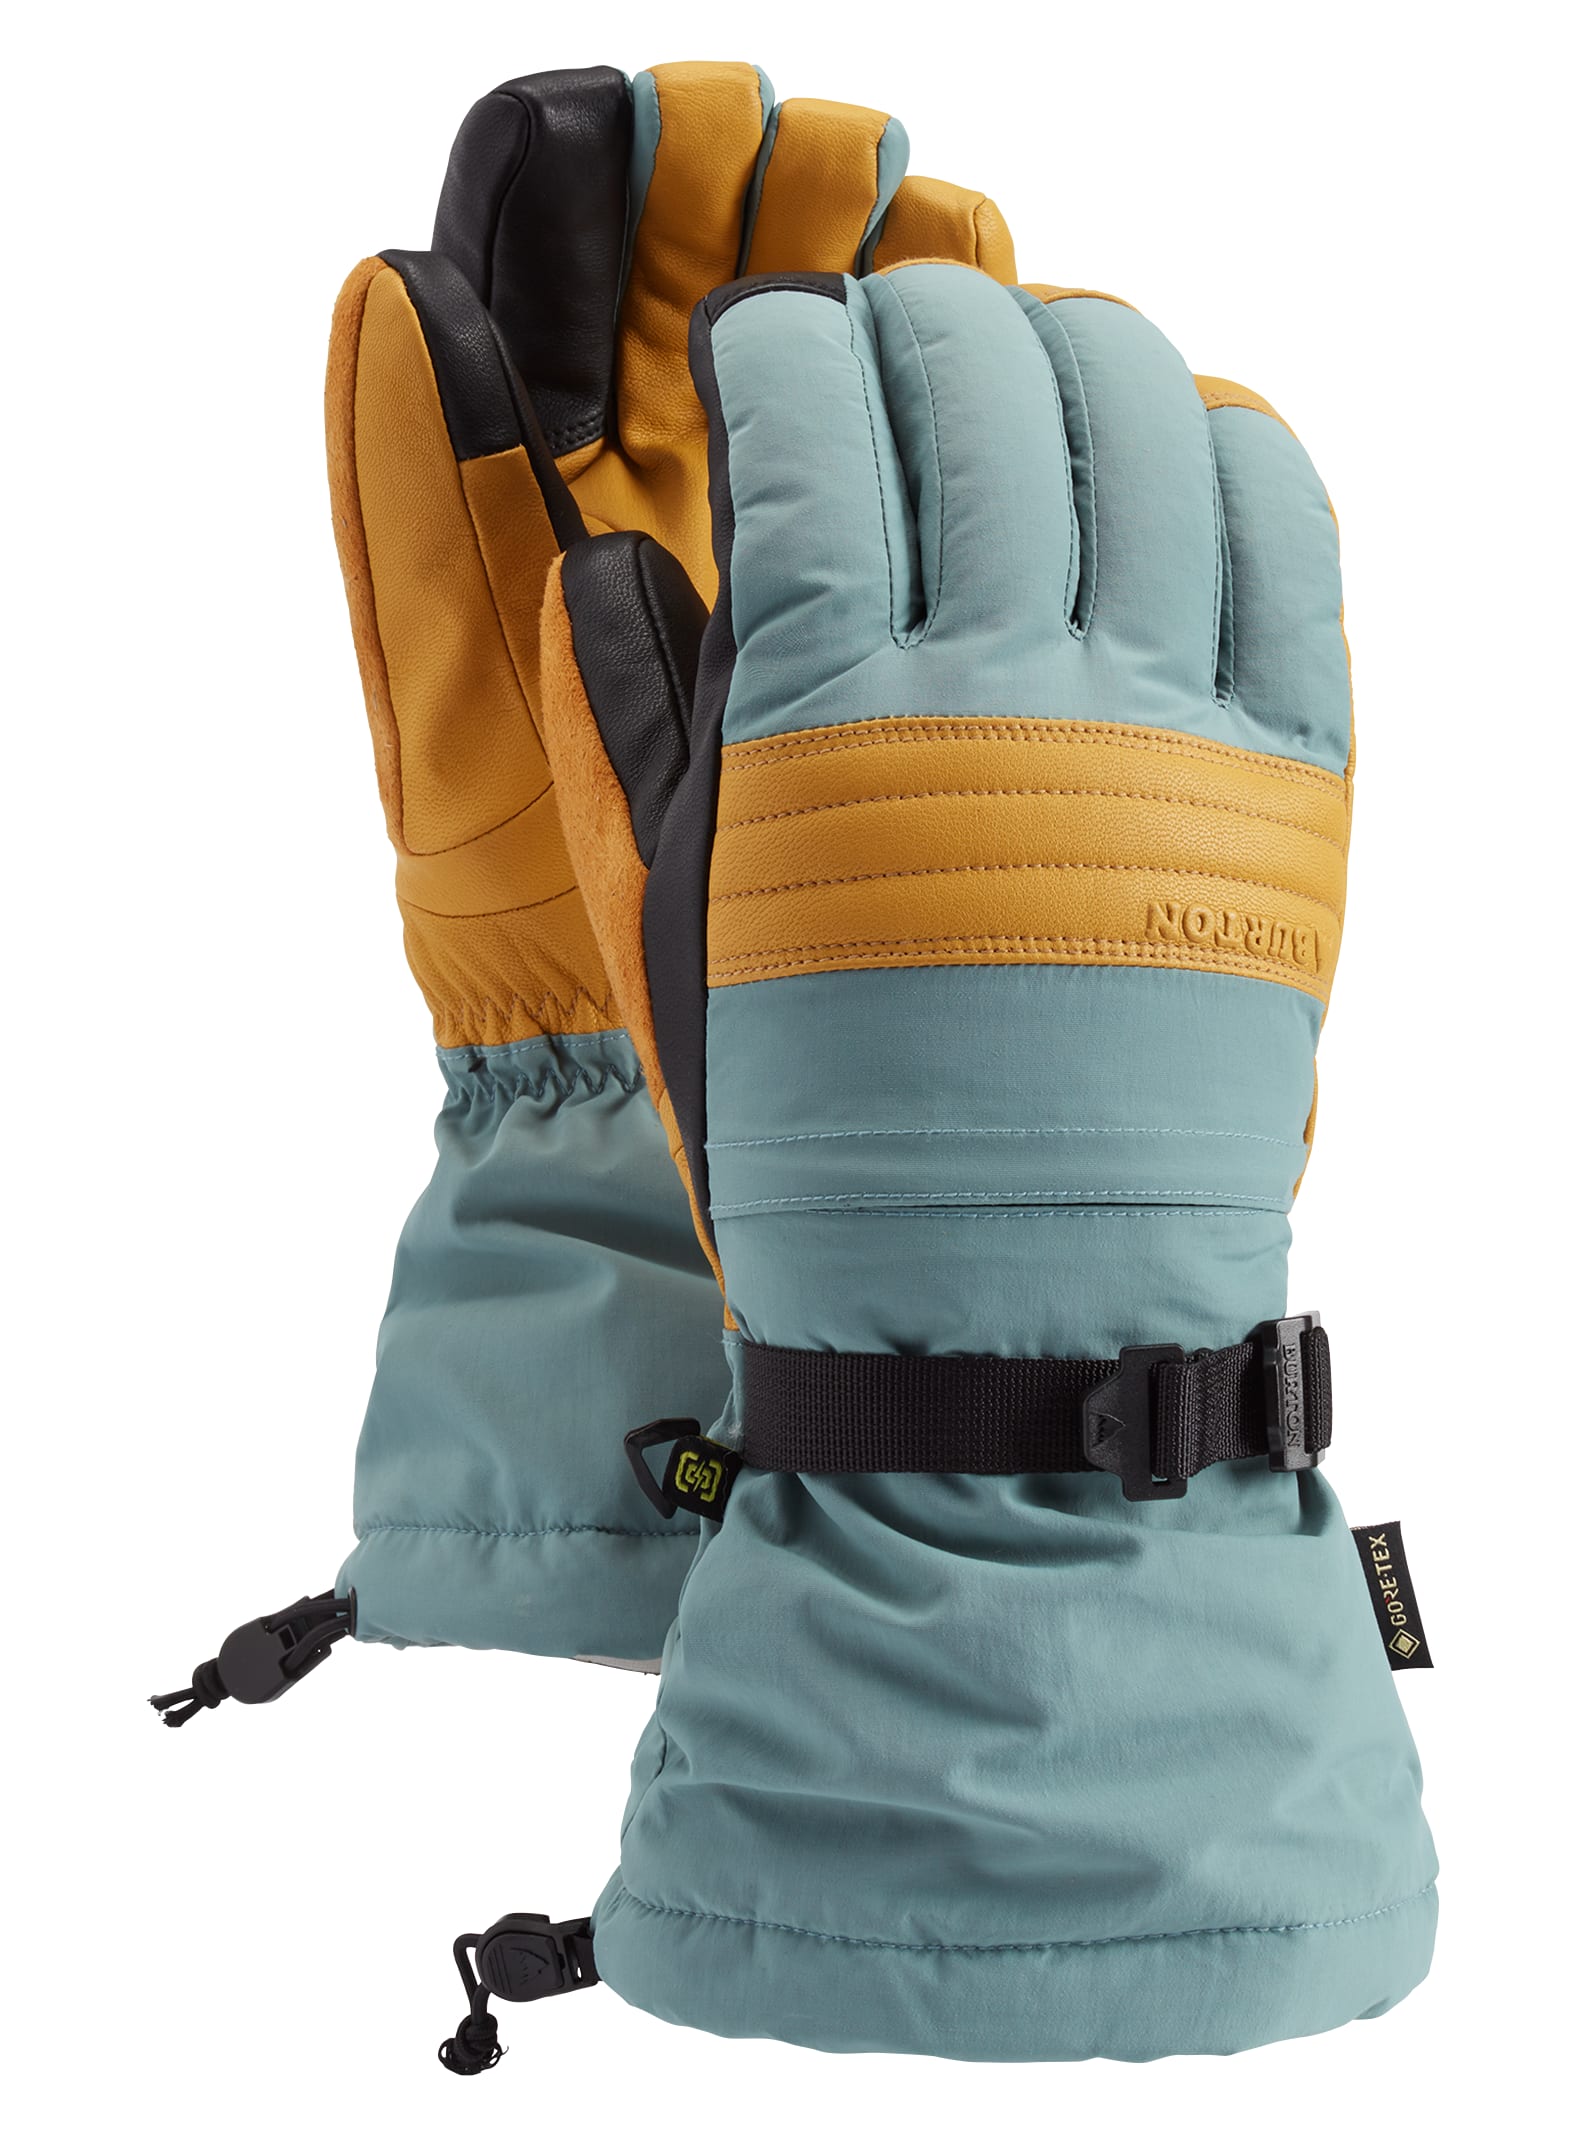 Men's Burton GORE-TEX Warmest Glove | Burton.com Winter 2021 FR